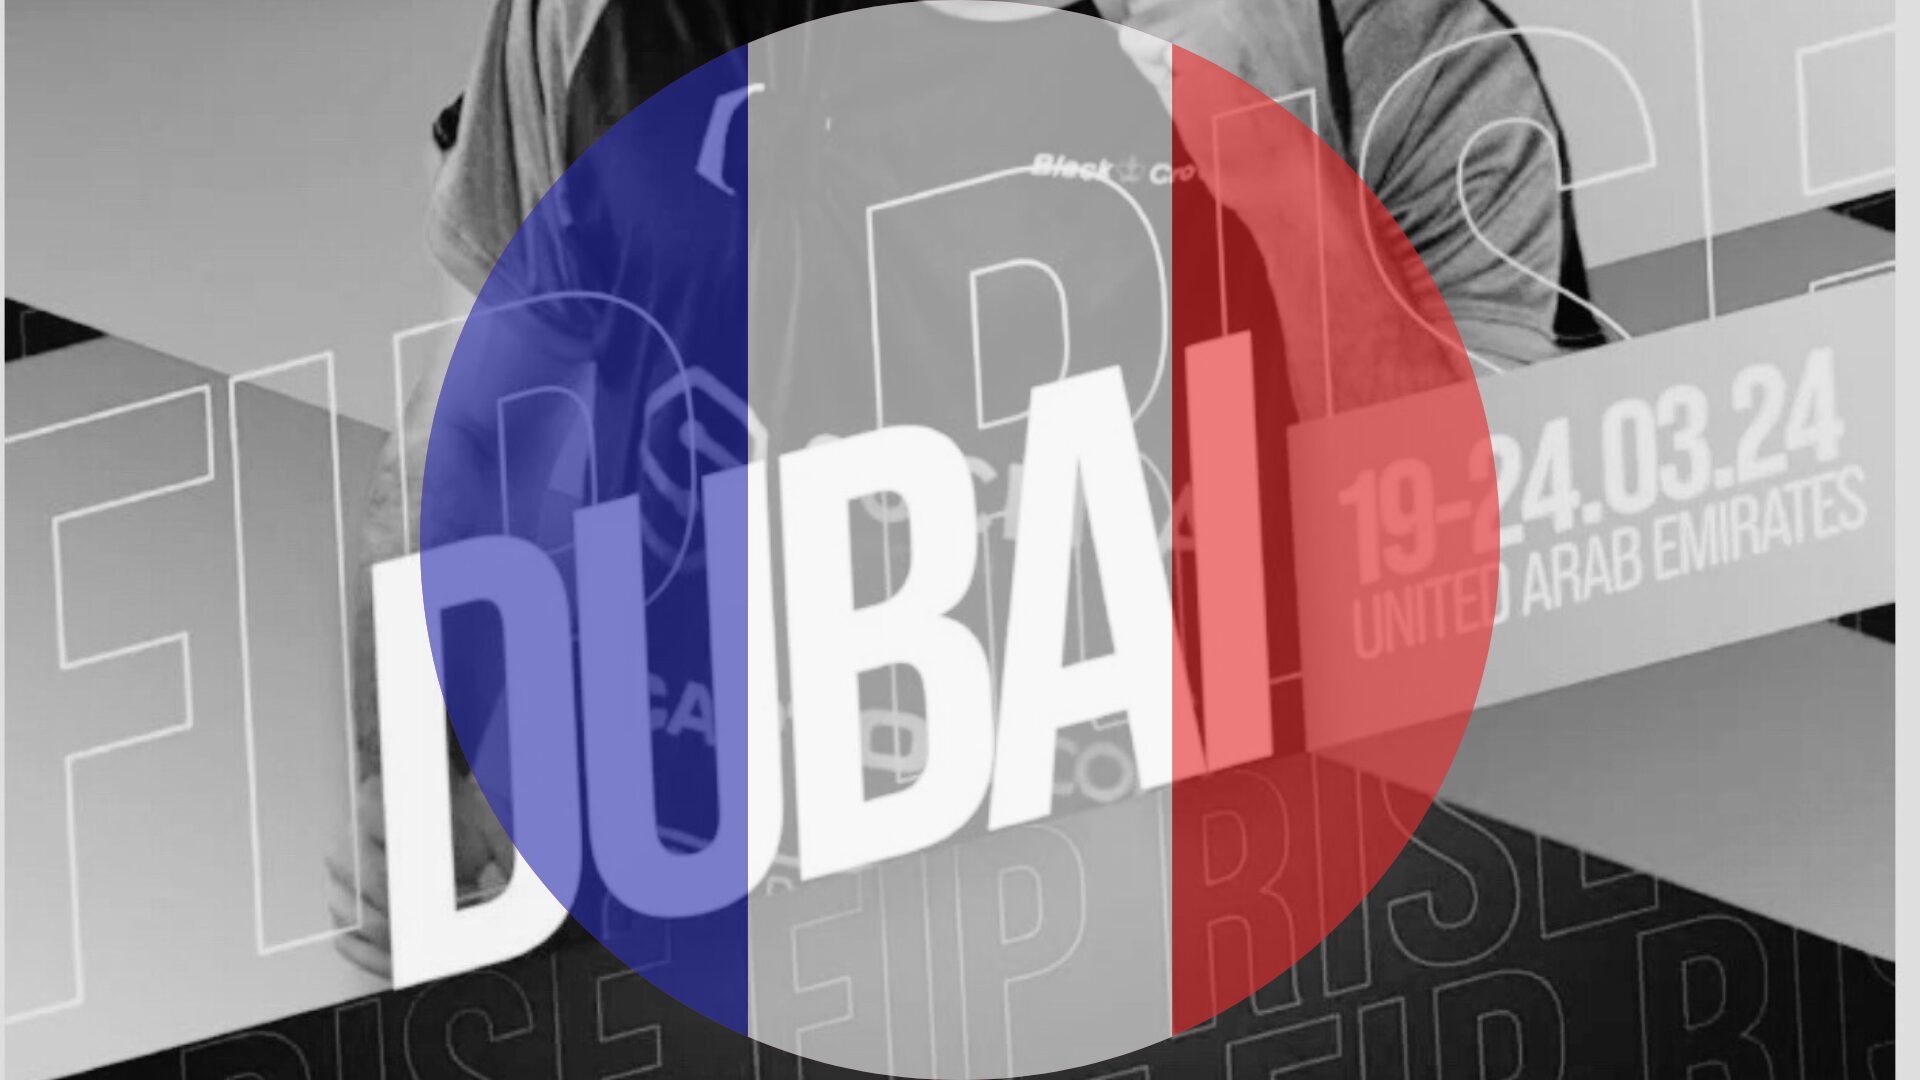 FIP Rise Dubai – Kuusi ranskalaista puolivälierissä!